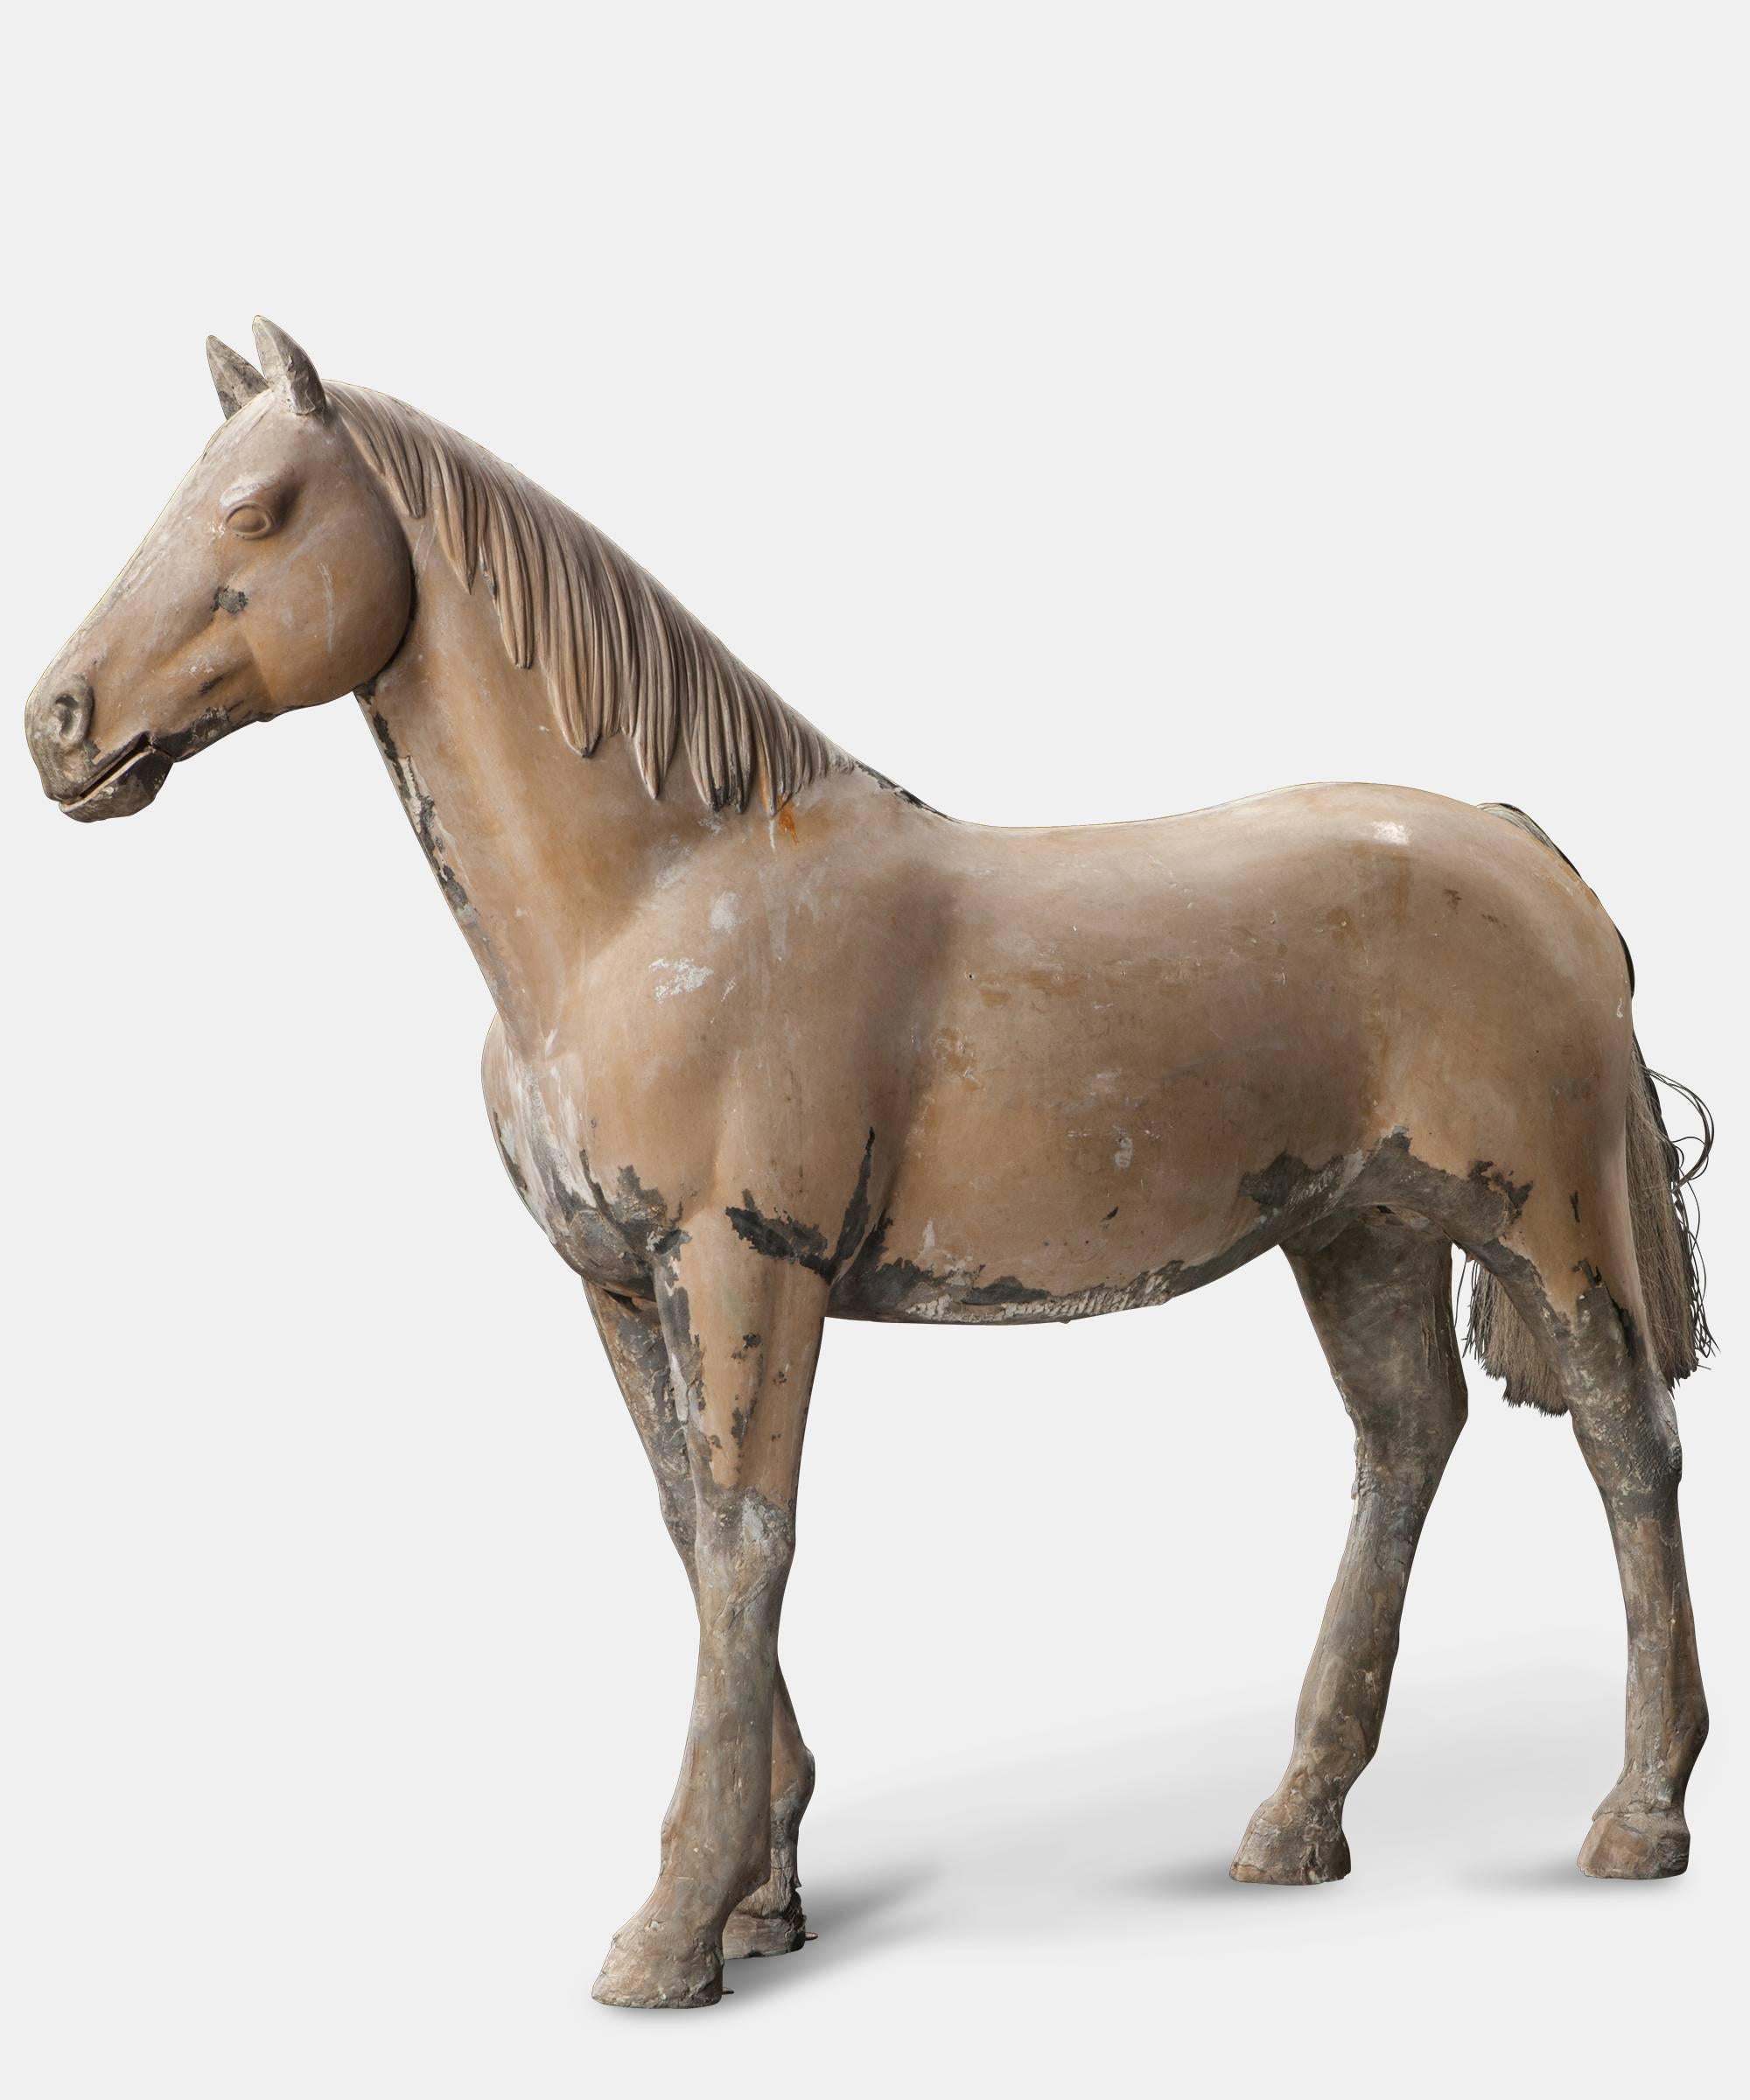 A fiberglass study of a pony originally made for a mining museum. Nickname "Wonderful Eric."